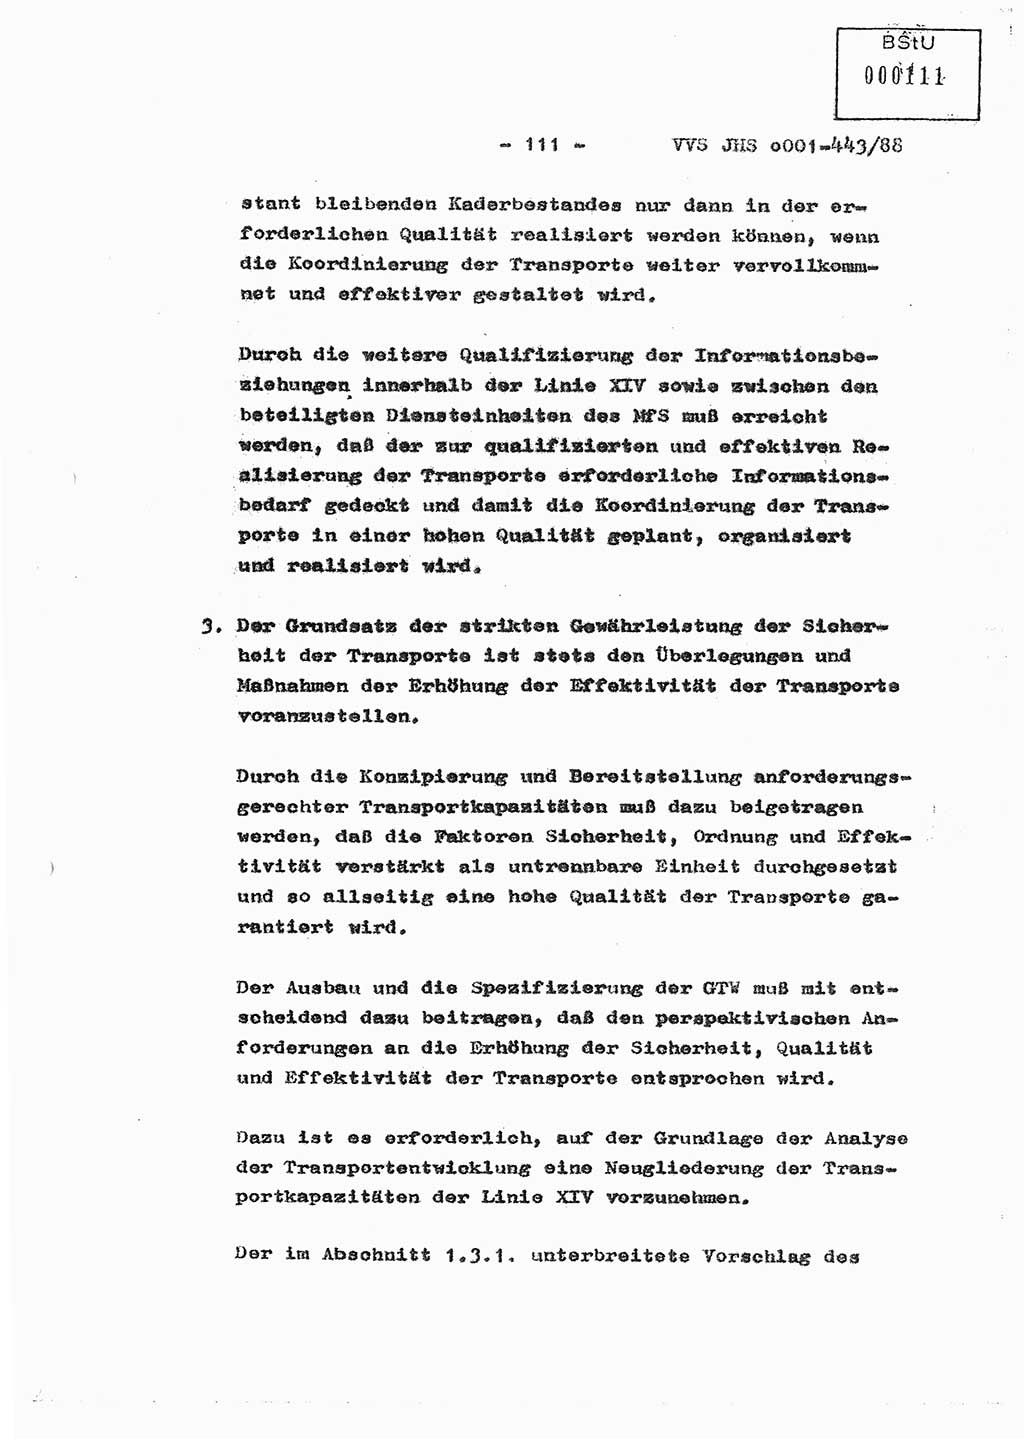 Diplomarbeit Hauptmann Michael Rast (Abt. ⅩⅣ), Major Bernd Rahaus (Abt. ⅩⅣ), Ministerium für Staatssicherheit (MfS) [Deutsche Demokratische Republik (DDR)], Juristische Hochschule (JHS), Vertrauliche Verschlußsache (VVS) o001-443/88, Potsdam 1988, Seite 111 (Dipl.-Arb. MfS DDR JHS VVS o001-443/88 1988, S. 111)